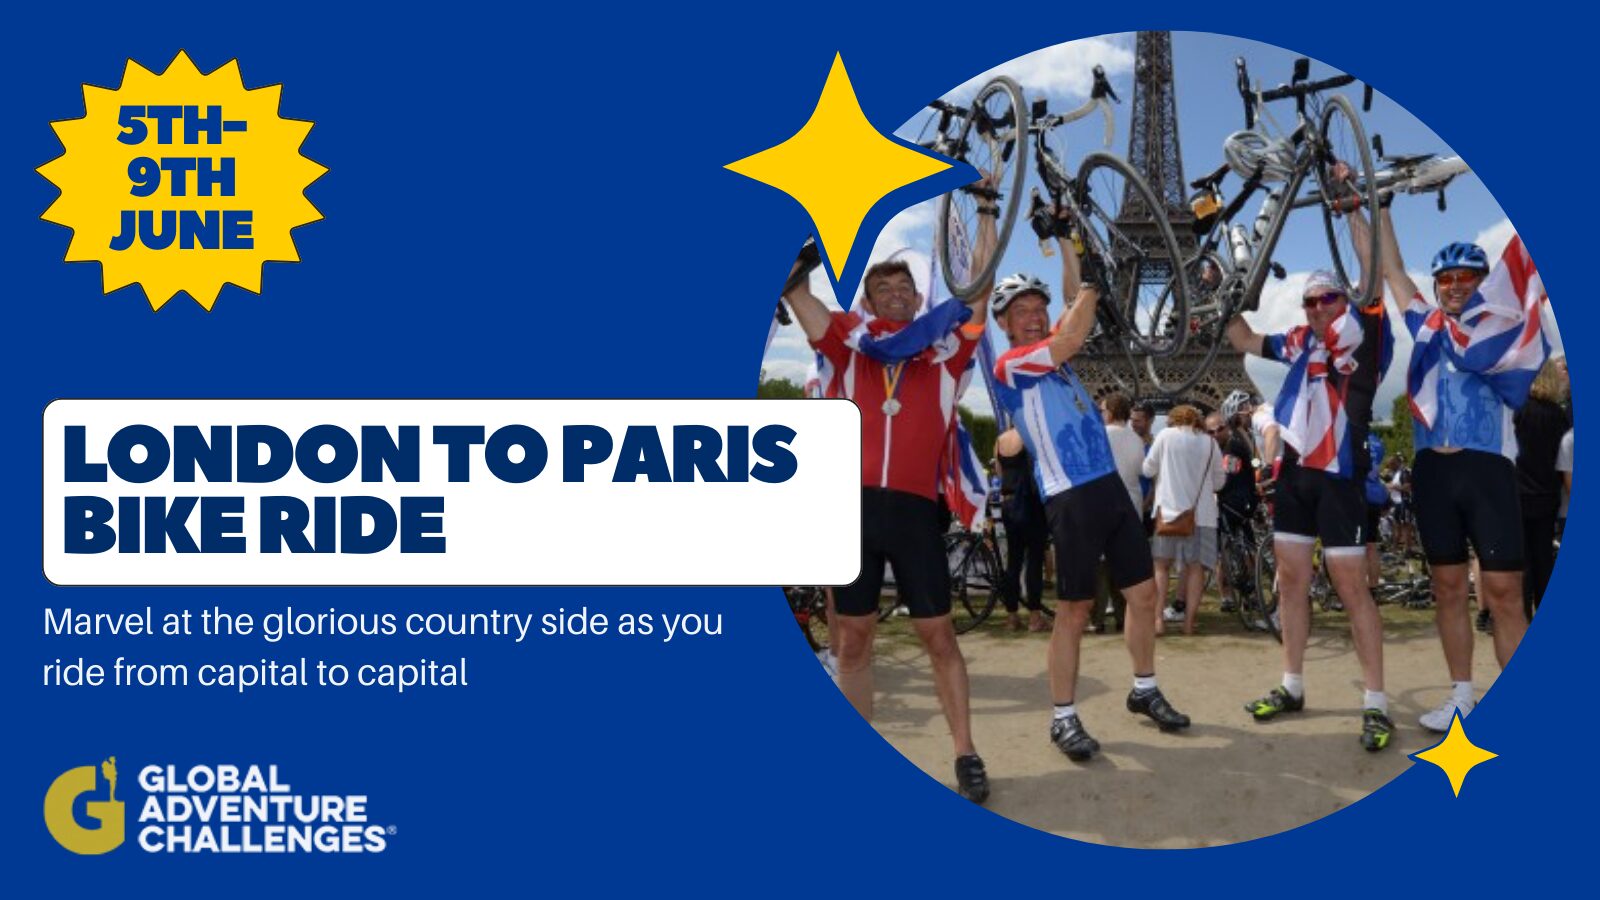 London to Paris Riders celebrate reaching Paris